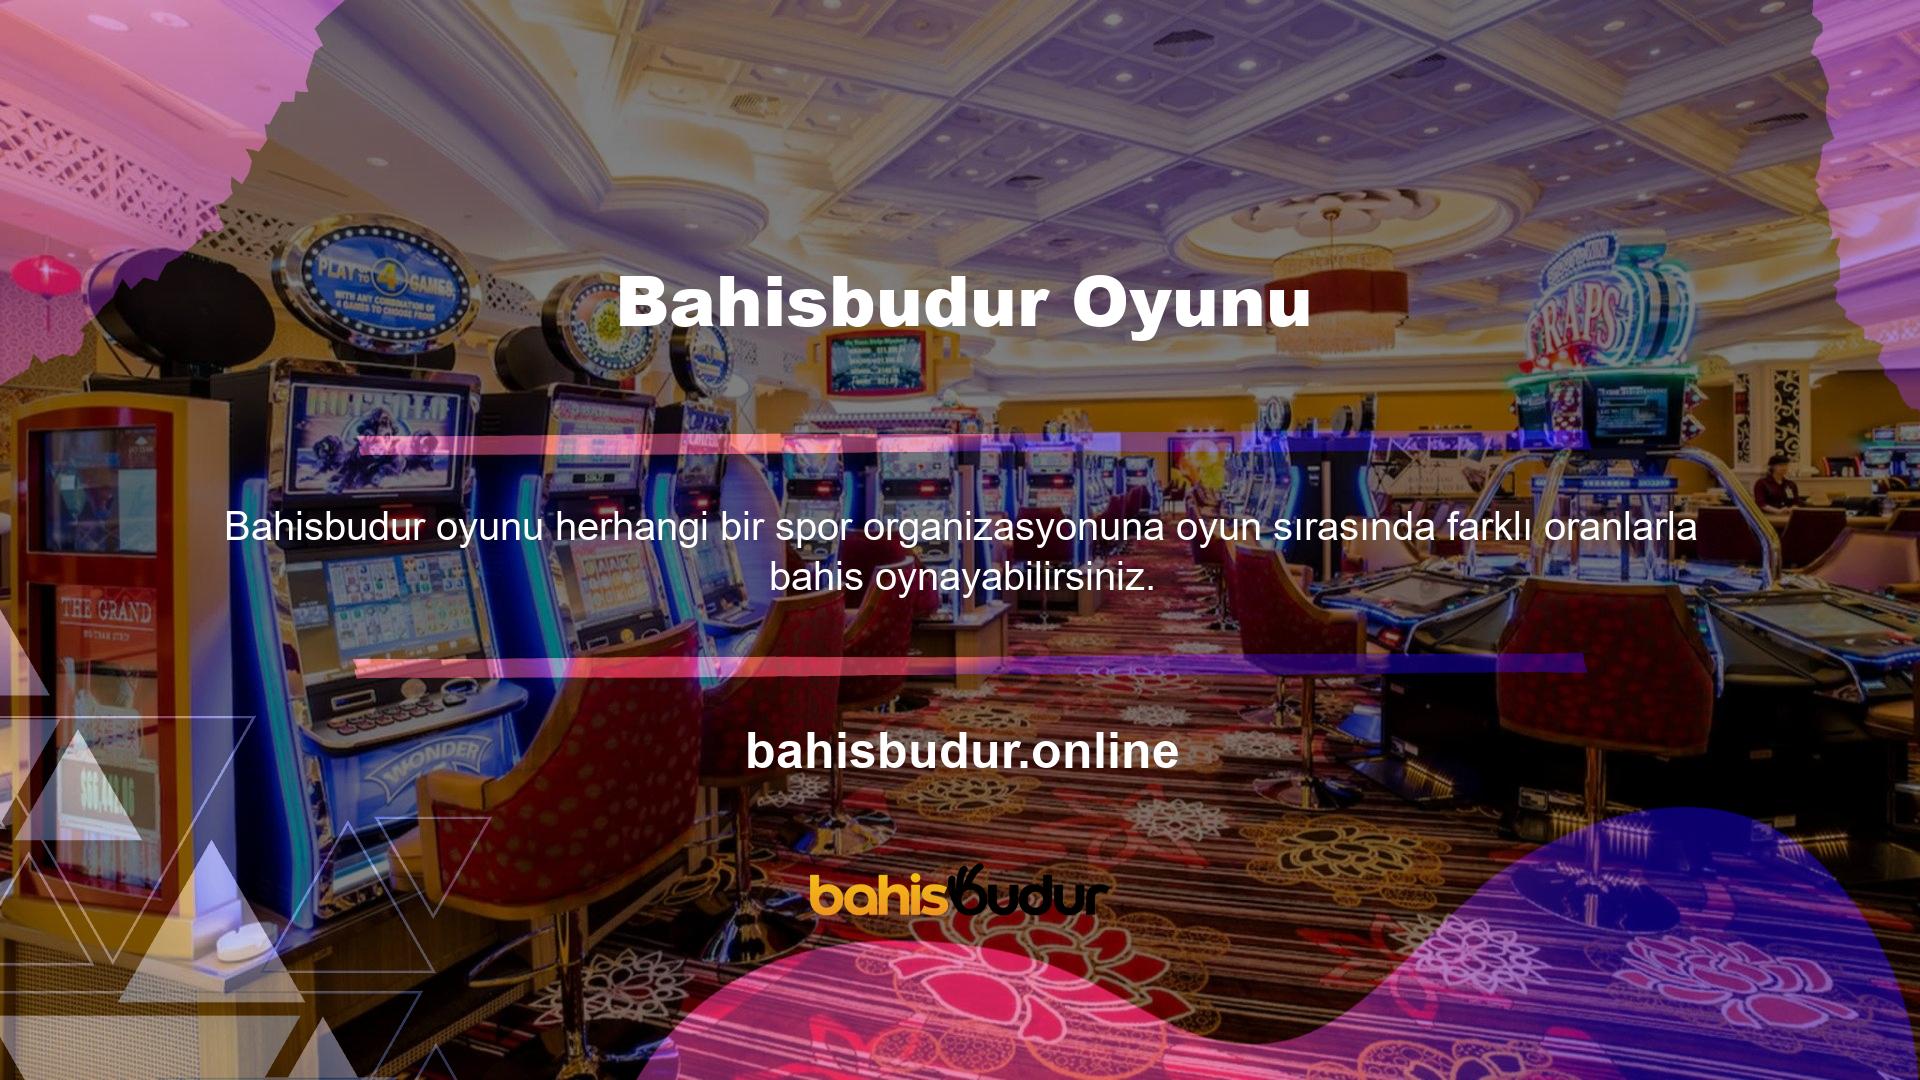 Ayrıca Bahisbudur teknolojisi her geçen gün yeni üyeler katmaktadır